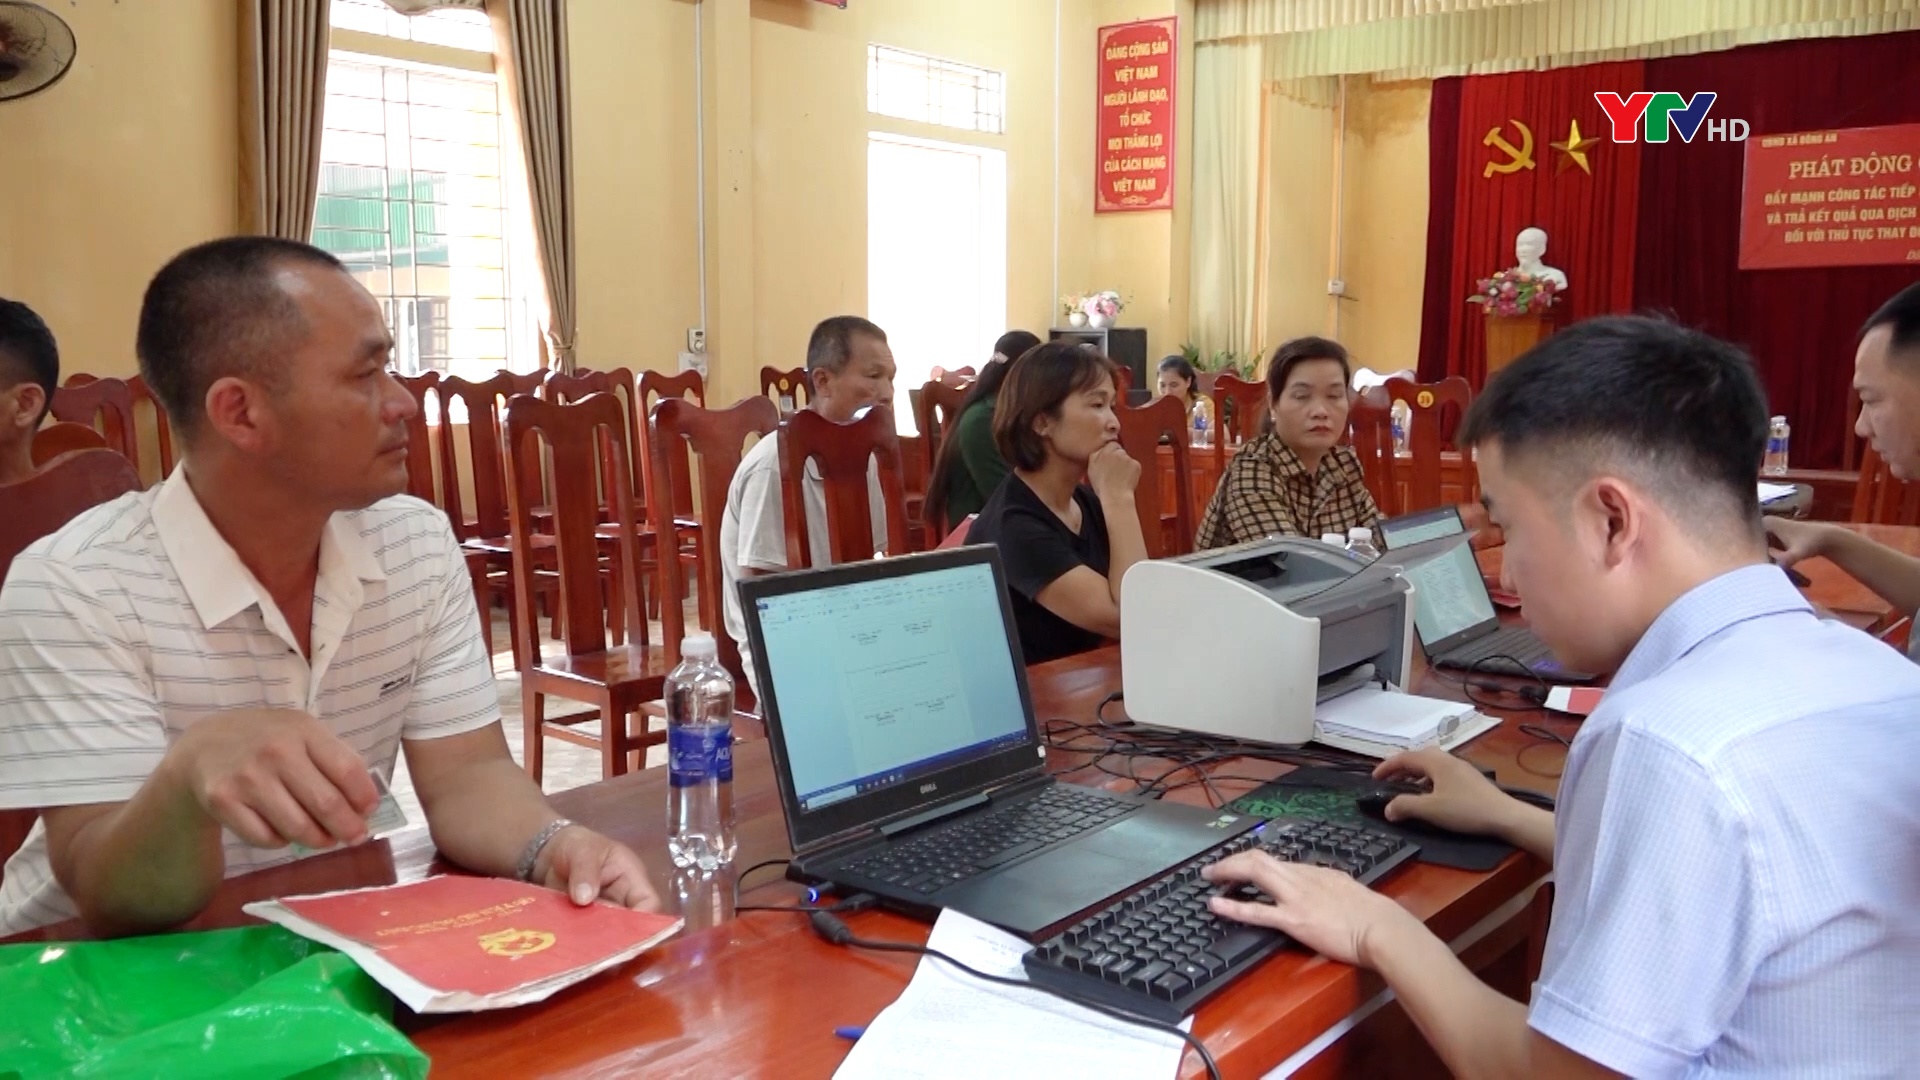 Hiệu quả chiến dịch tiếp nhận hồ sơ trực tuyến và trả kết quả qua bưu chính công ích đối với thủ tục thay đổi thông tin đất đai tại huyện Văn Yên